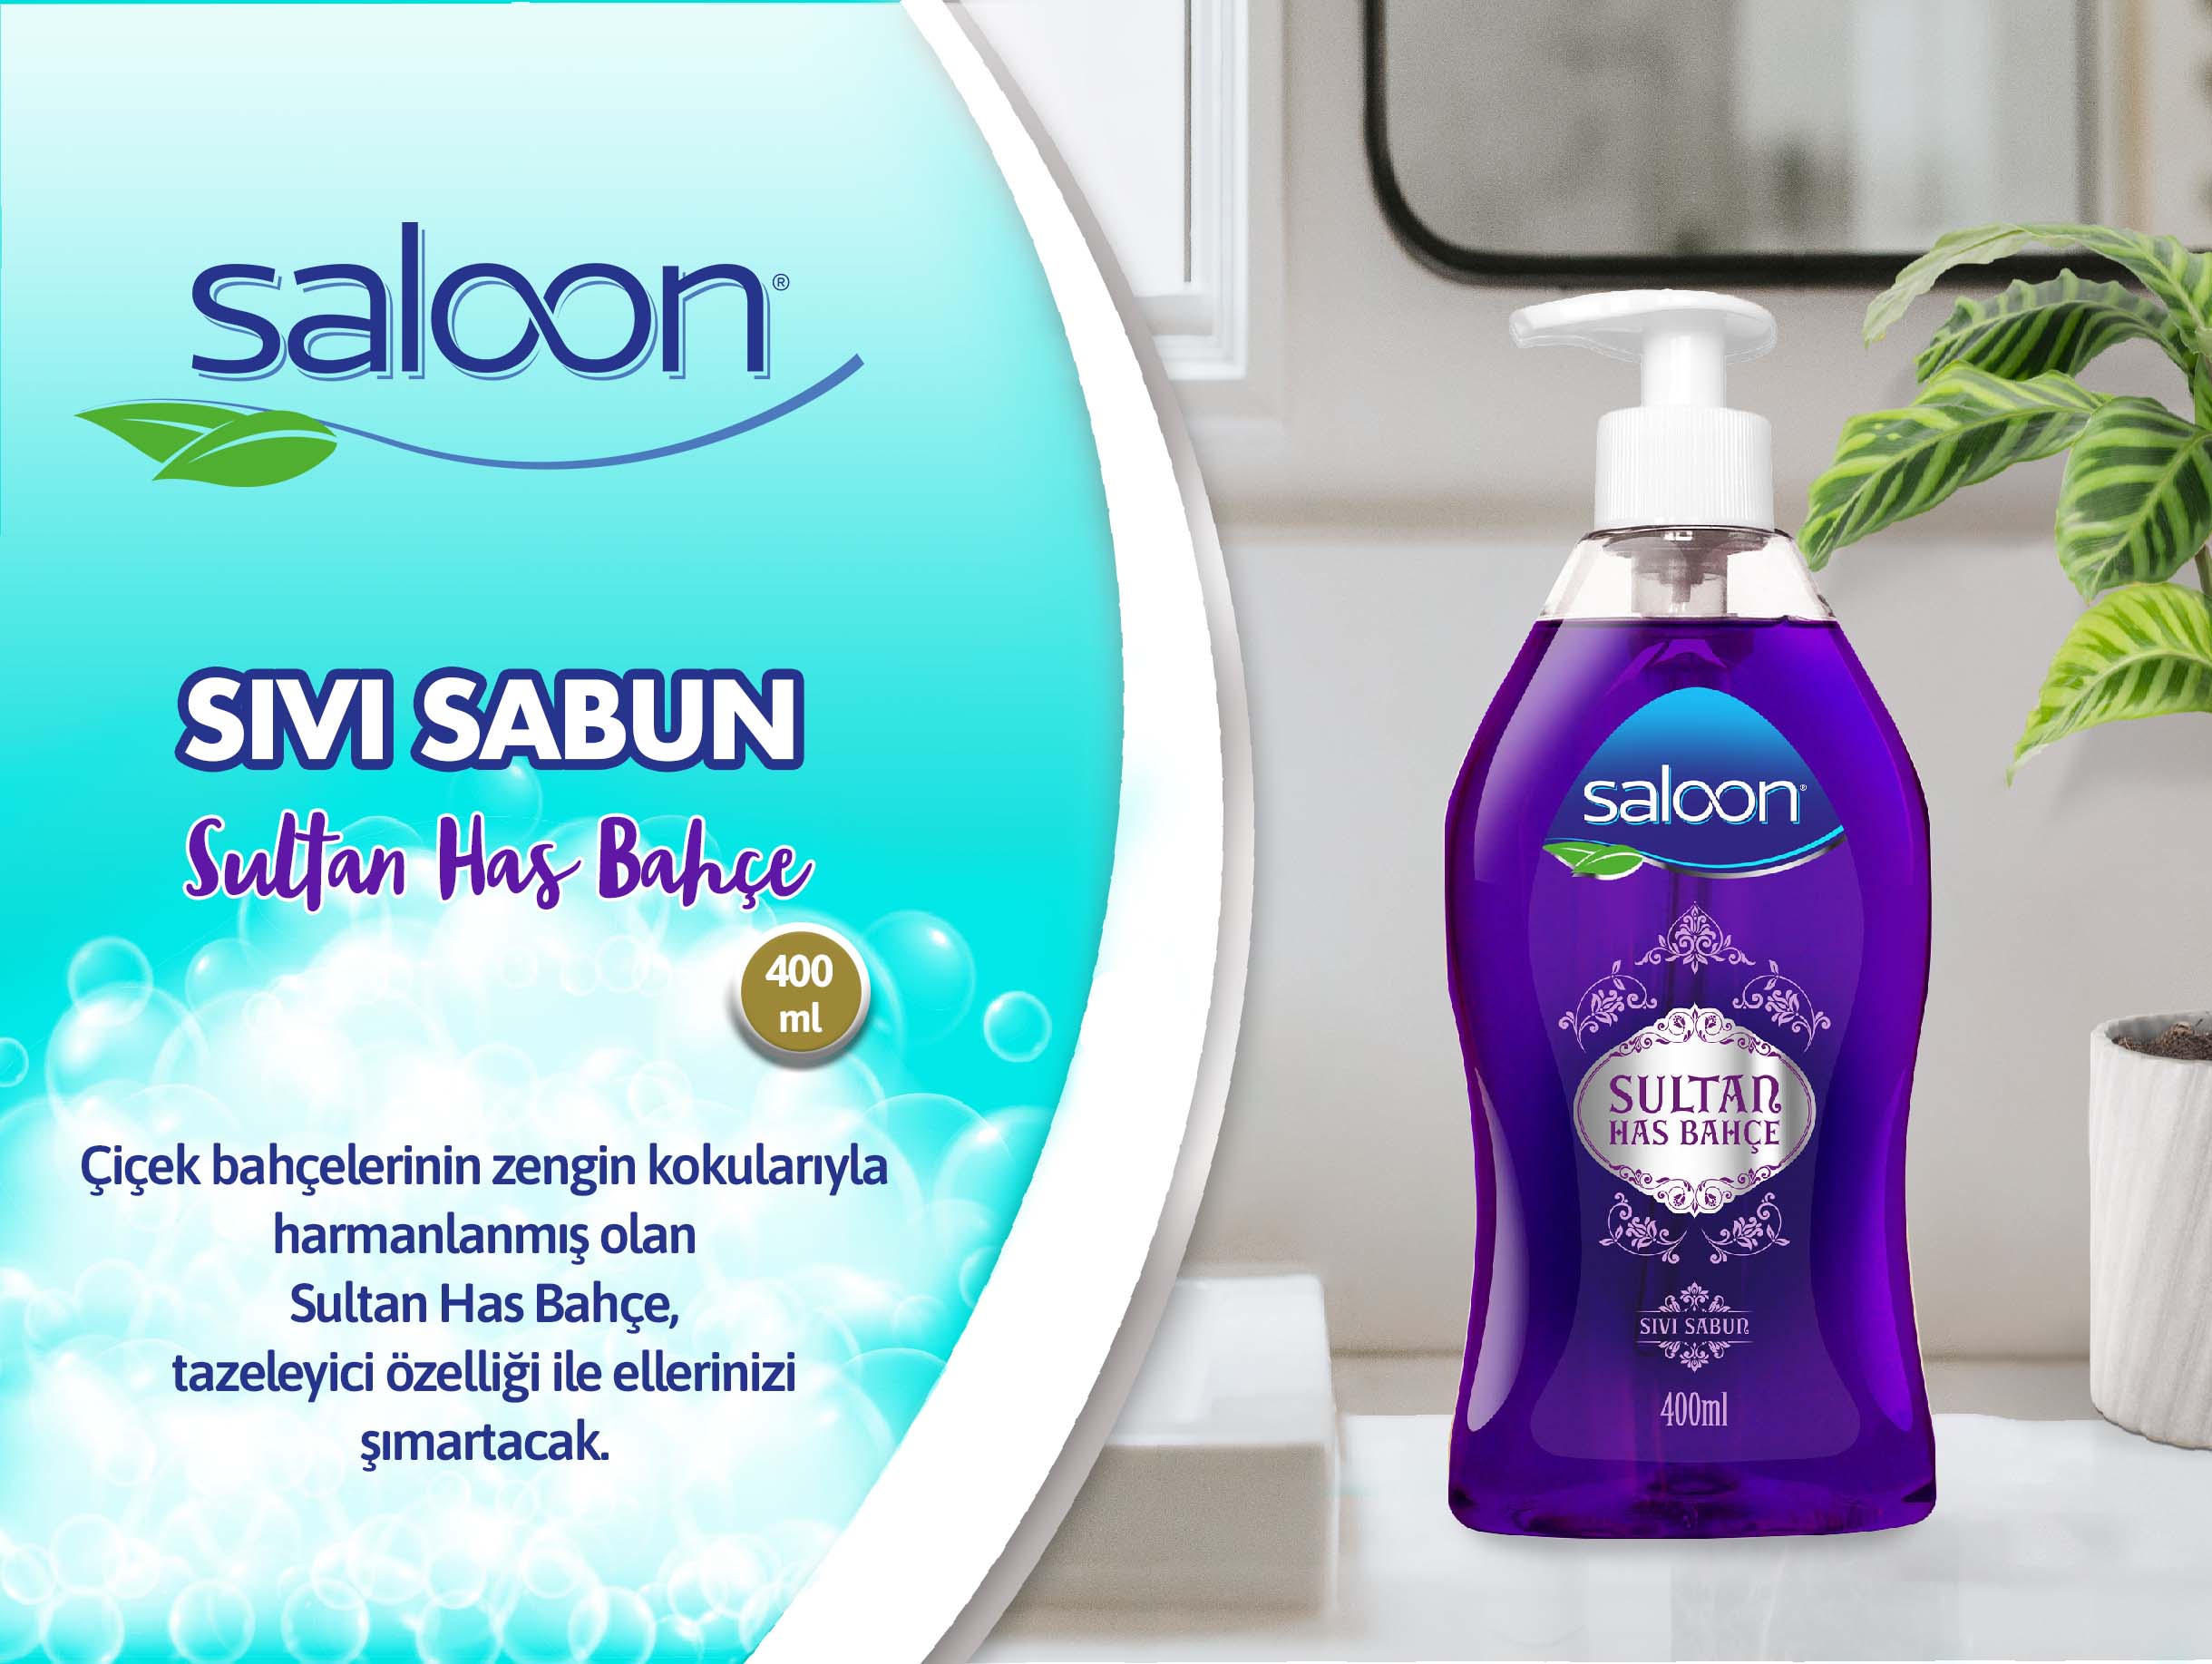 Saloon sıvı Sabun Sultan has bahçe 400 ml.jpg (257 KB)